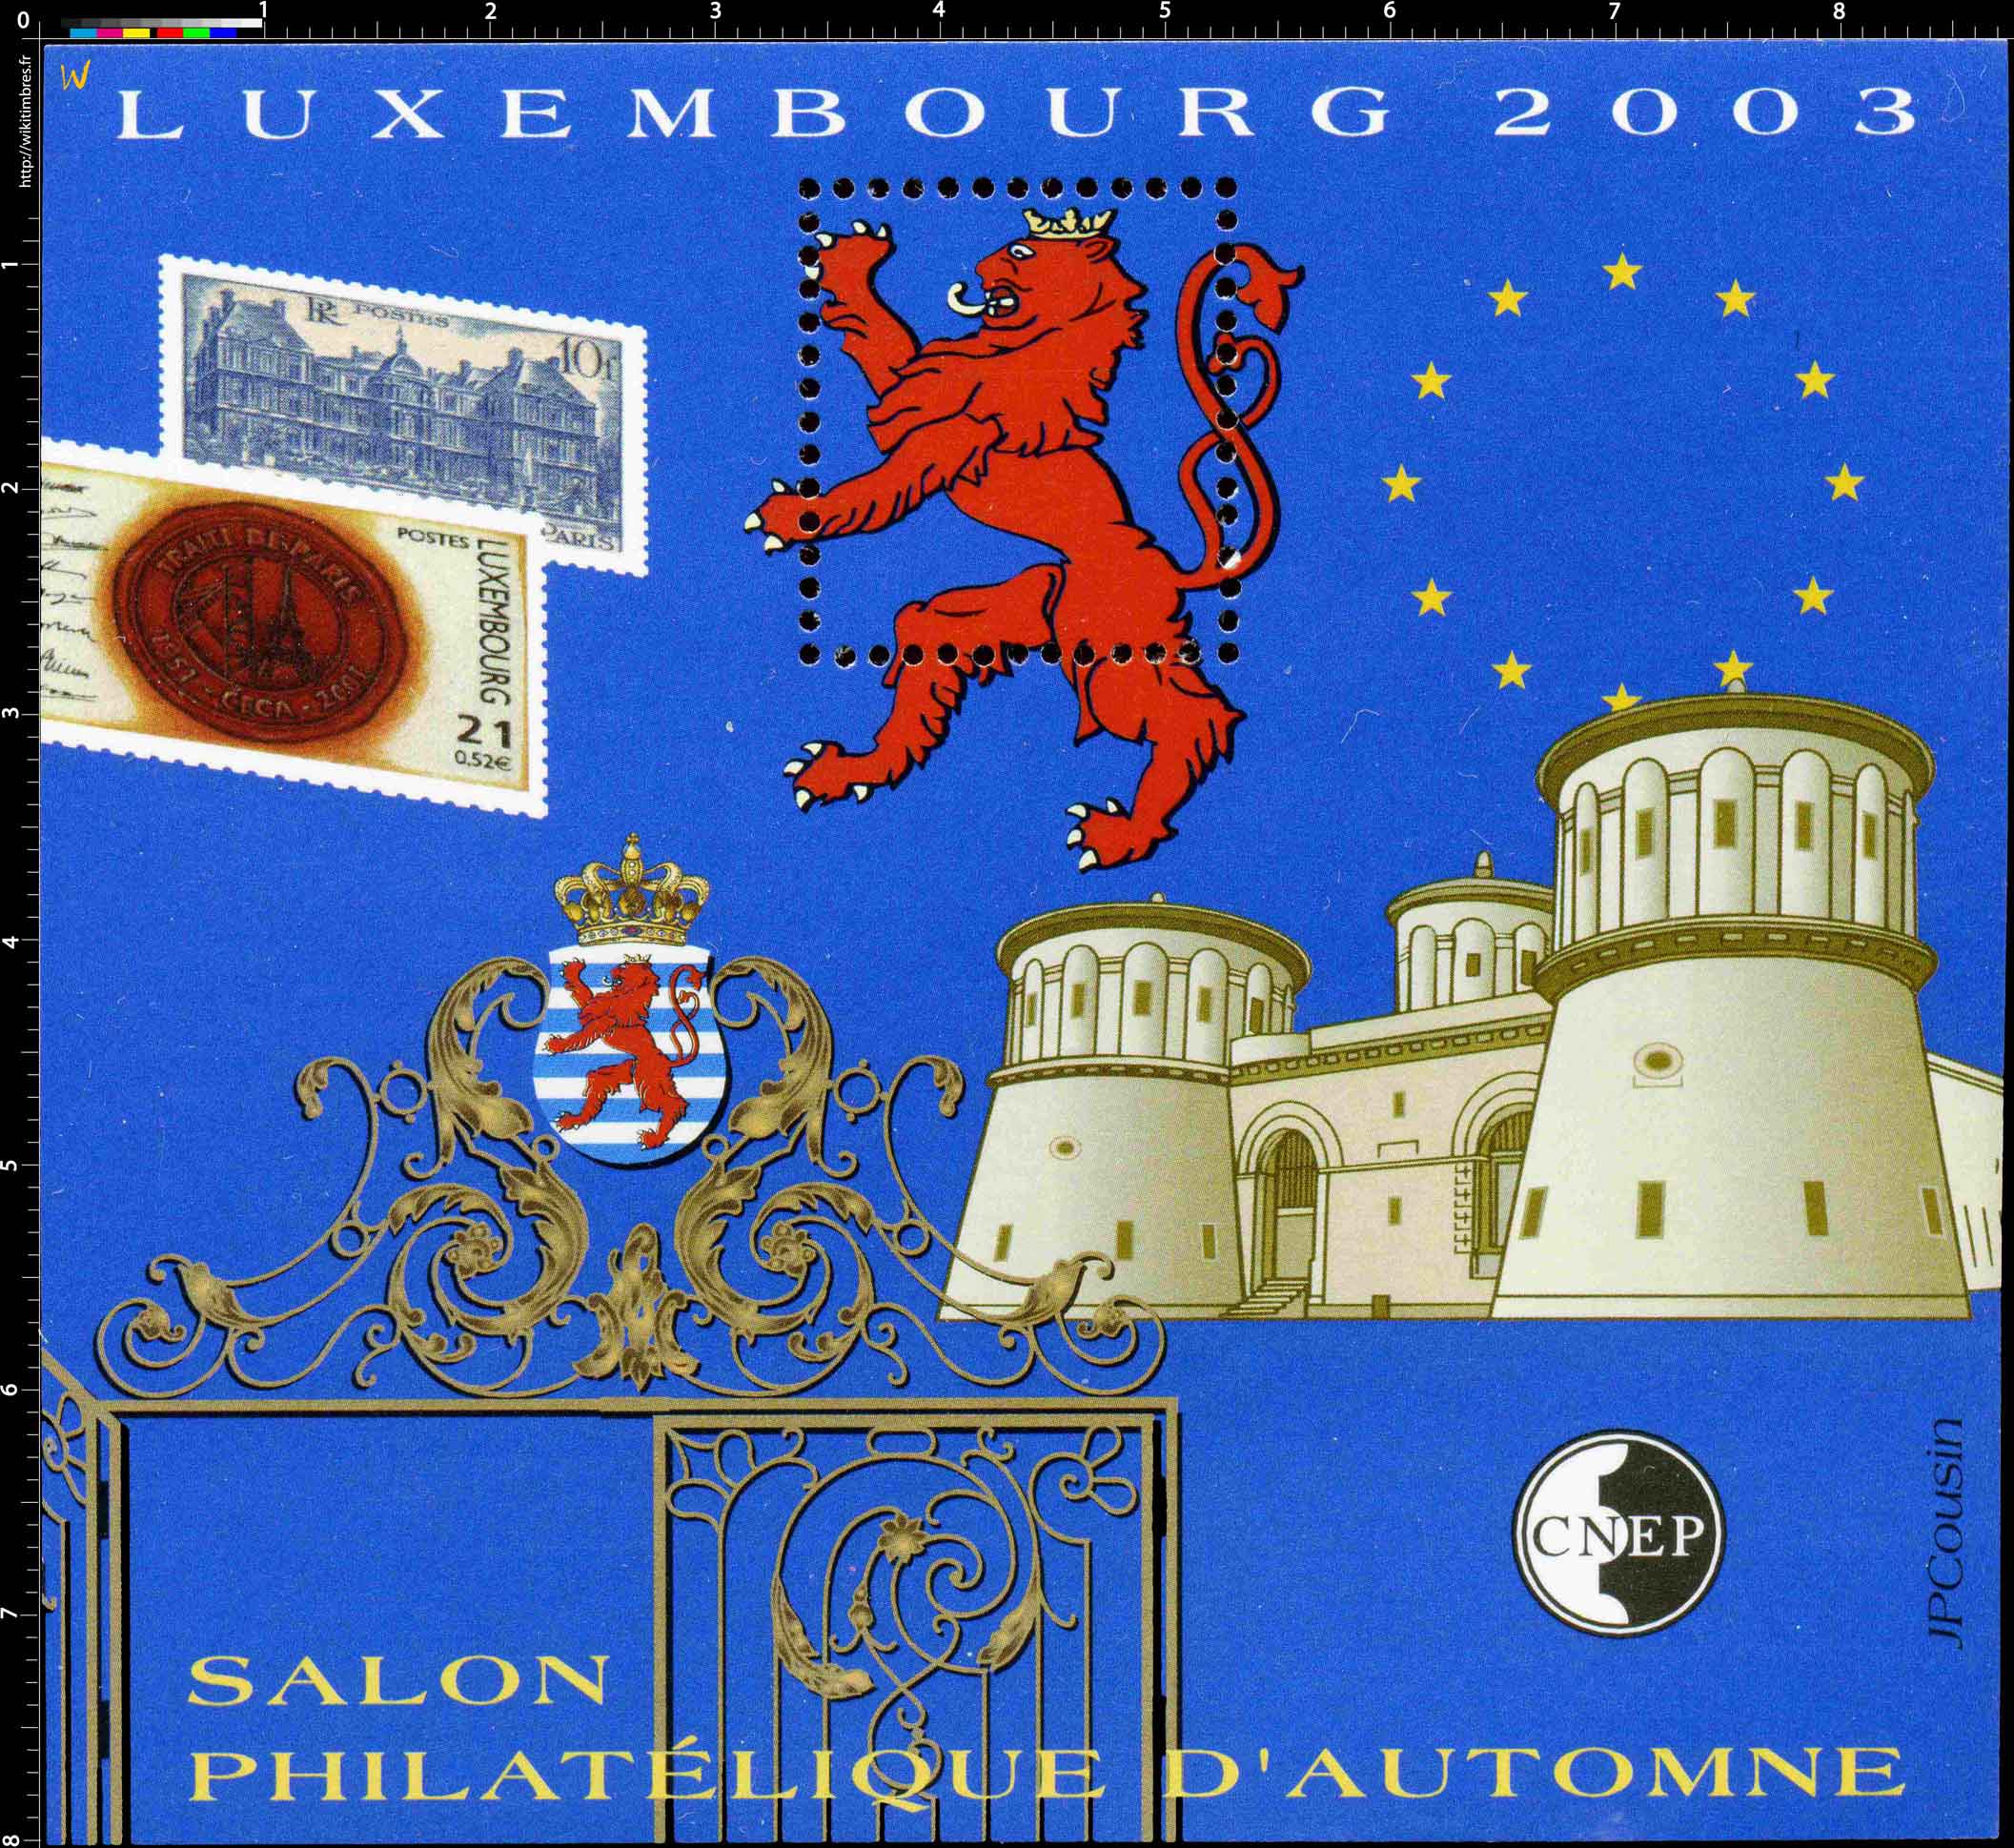 2003 Salon philatélique d'automne Luxembourg CNEP